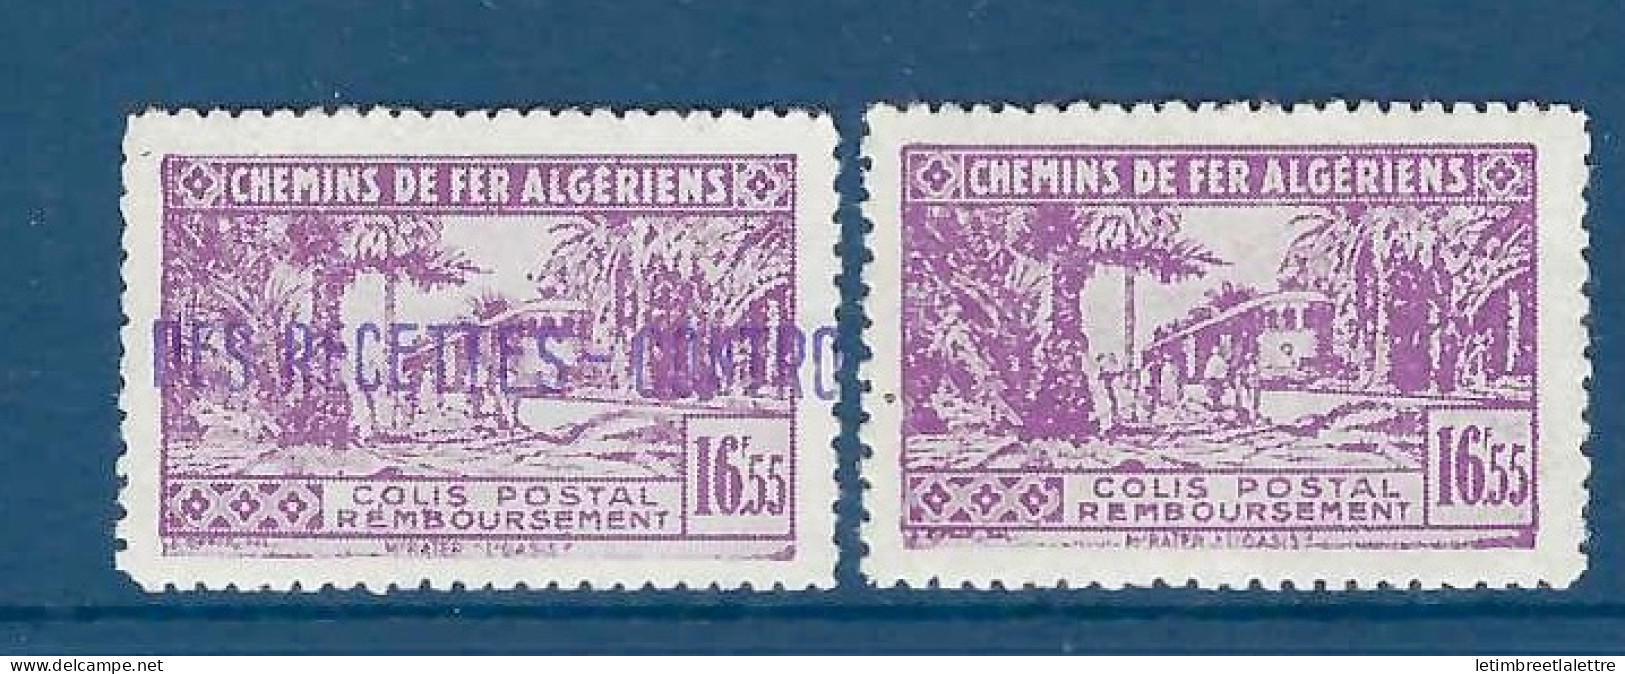 Algérie - Colis Postaux - YT N° 94 * - Neuf Avec Charnière - 1941 1942 - Parcel Post